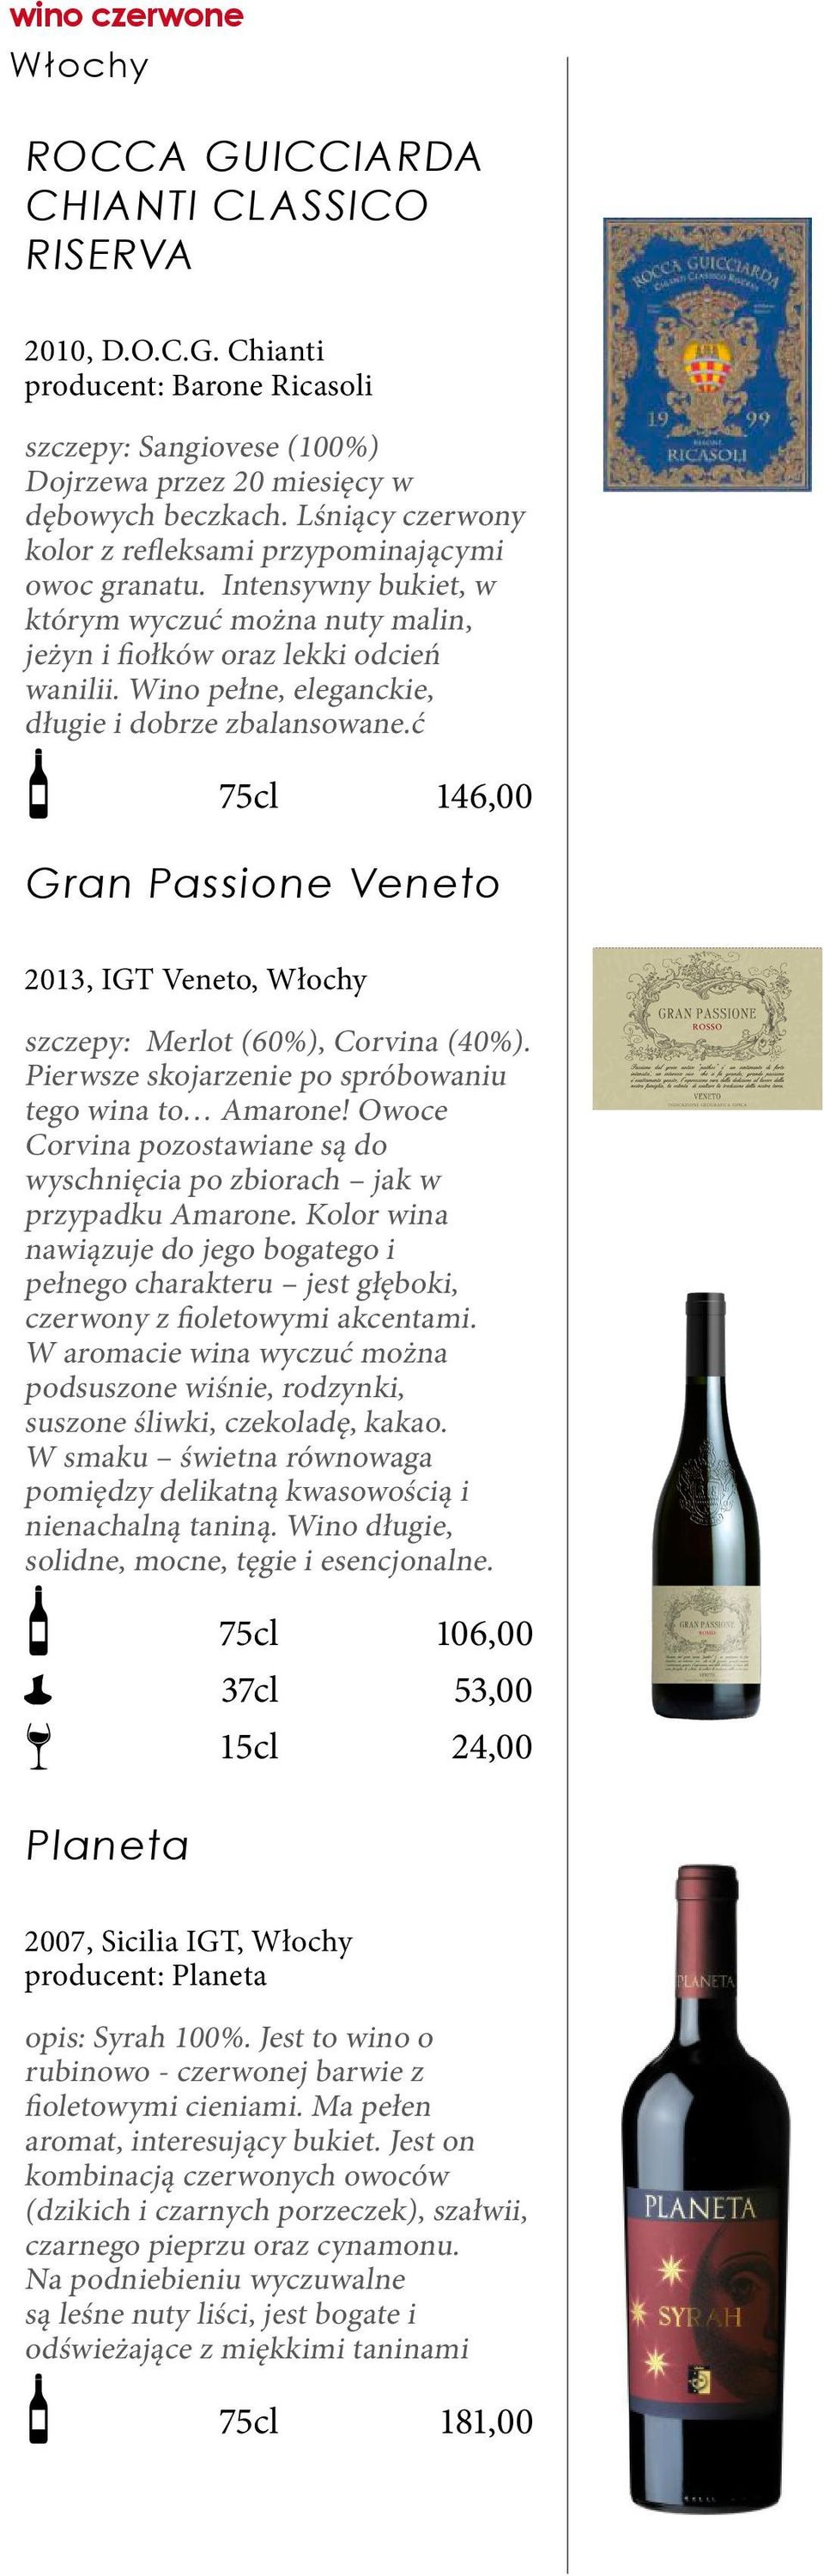 Wino pełne, eleganckie, długie i dobrze zbalansowane.ć 146,00 Gran Passione Veneto 2013, IGT Veneto, Włochy szczepy: Merlot (60%), Corvina (40%).